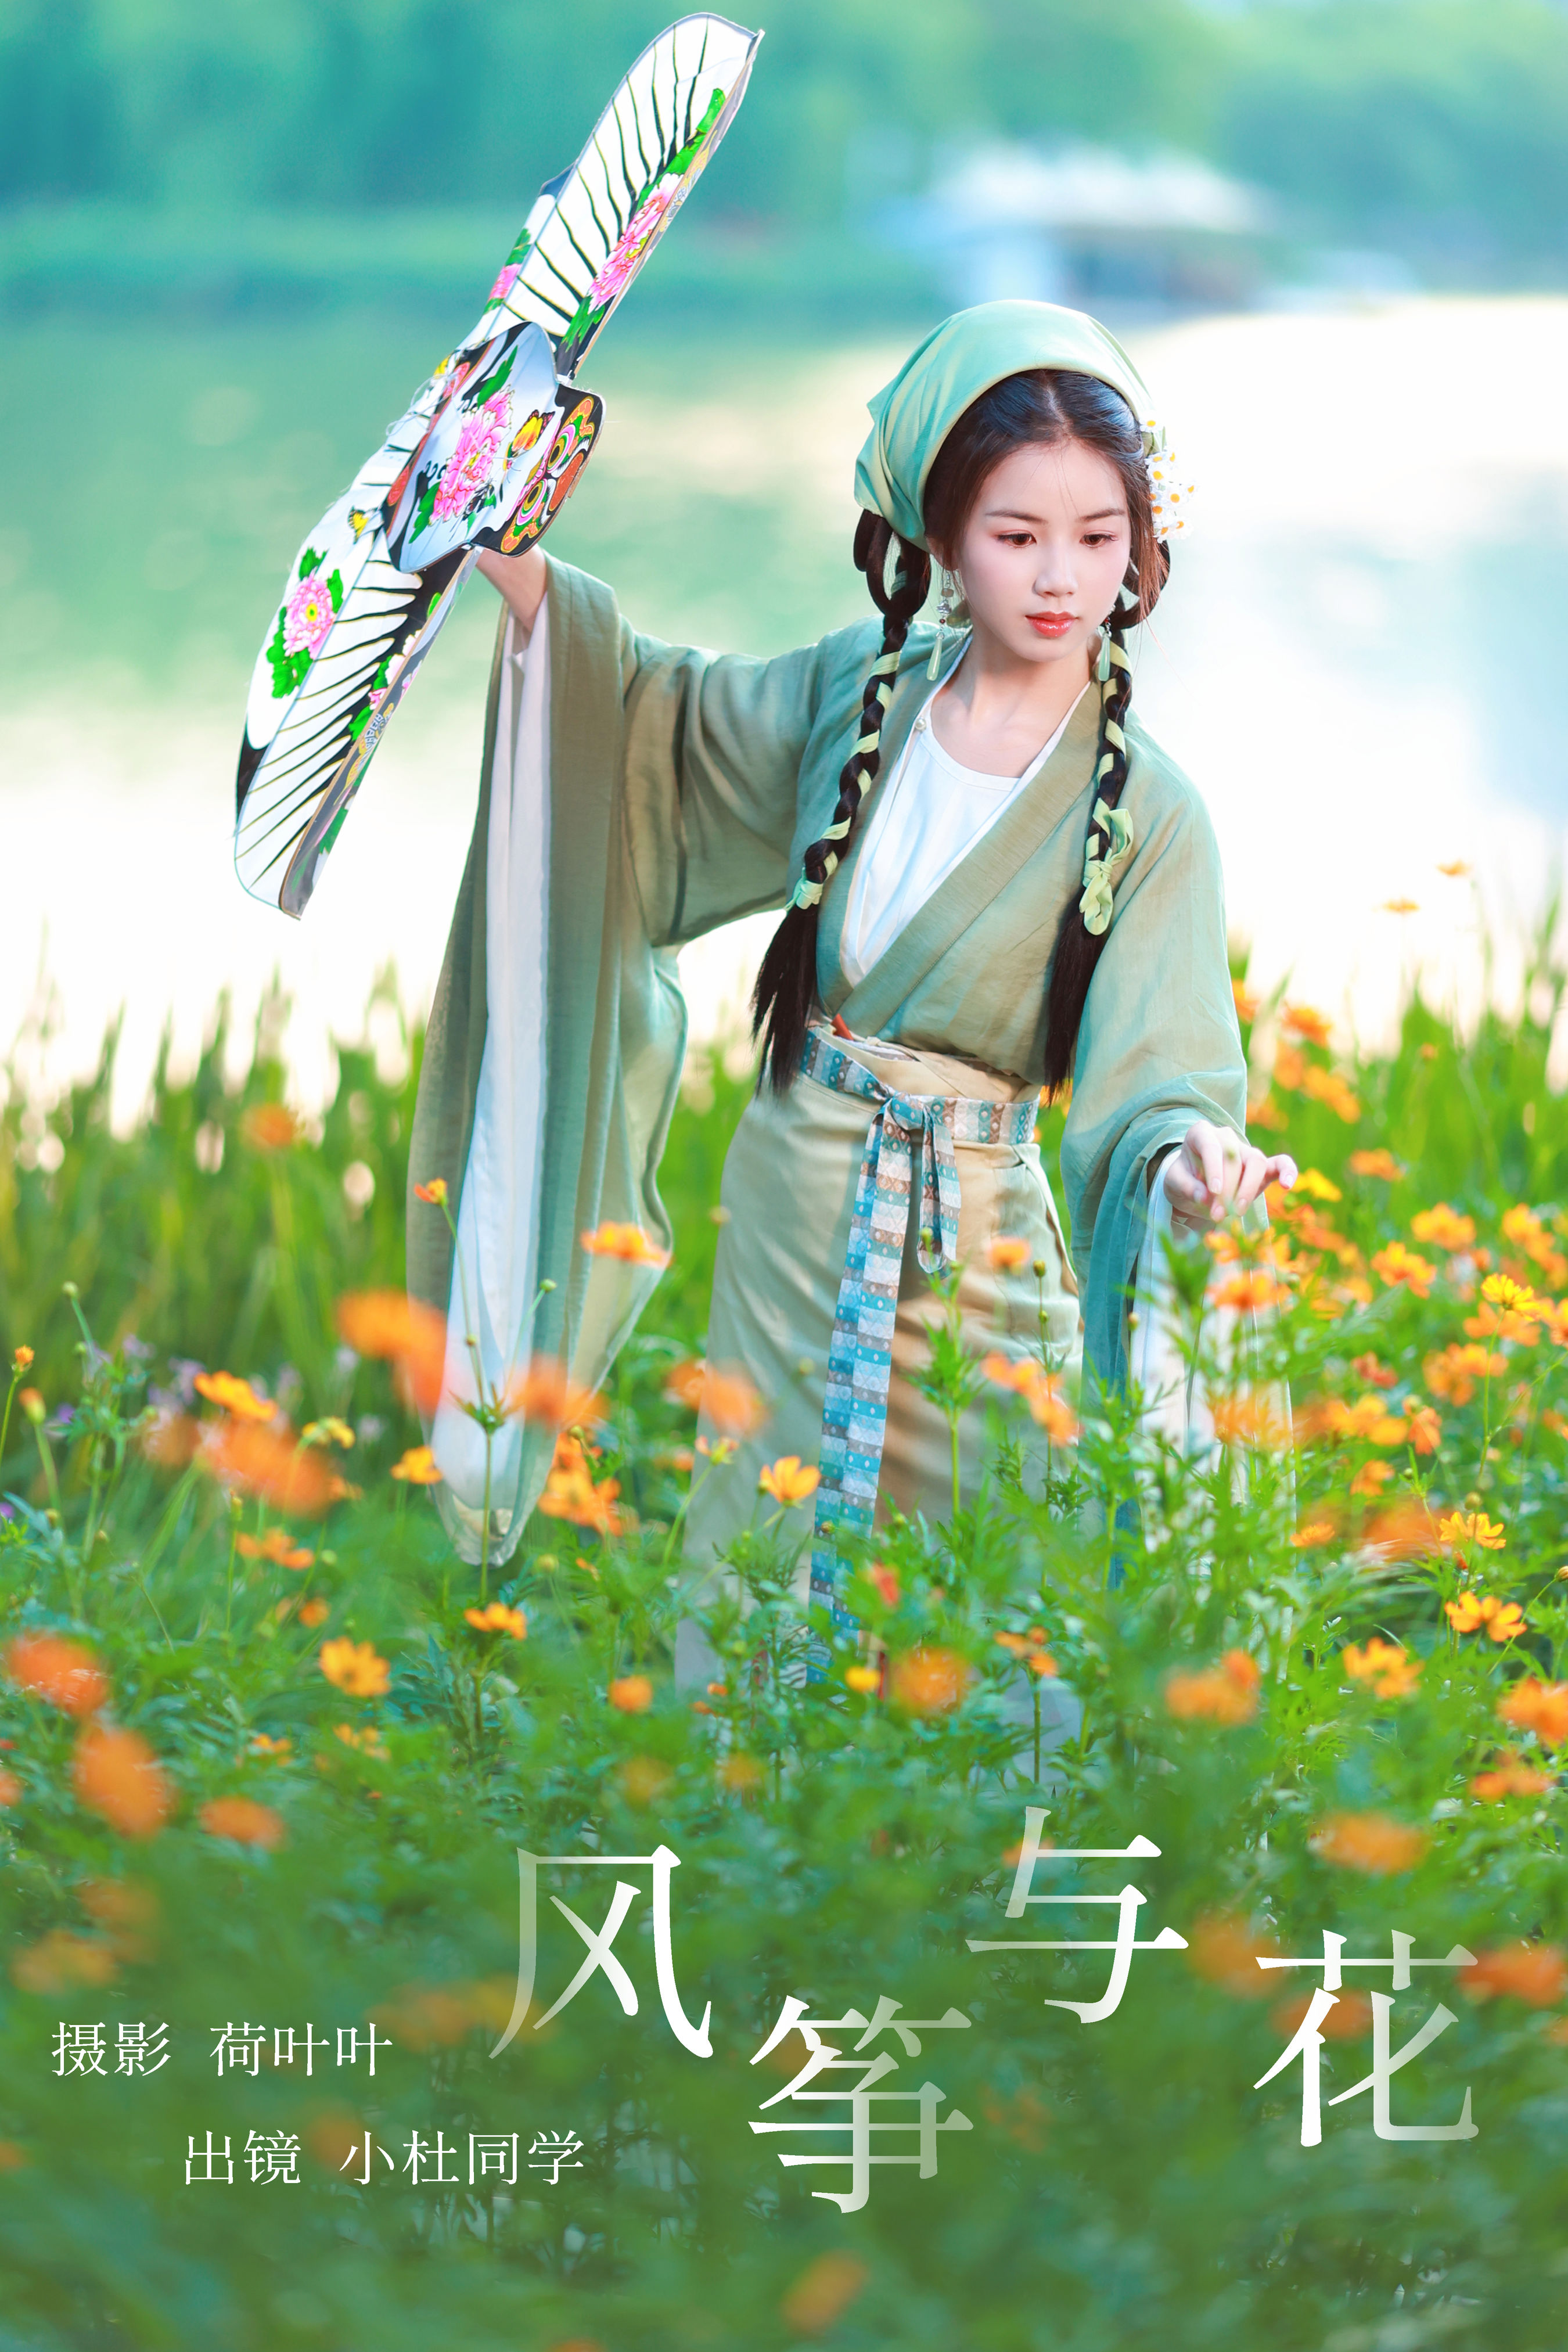 荷叶叶_小杜同学《风筝与花》美图作品图片1